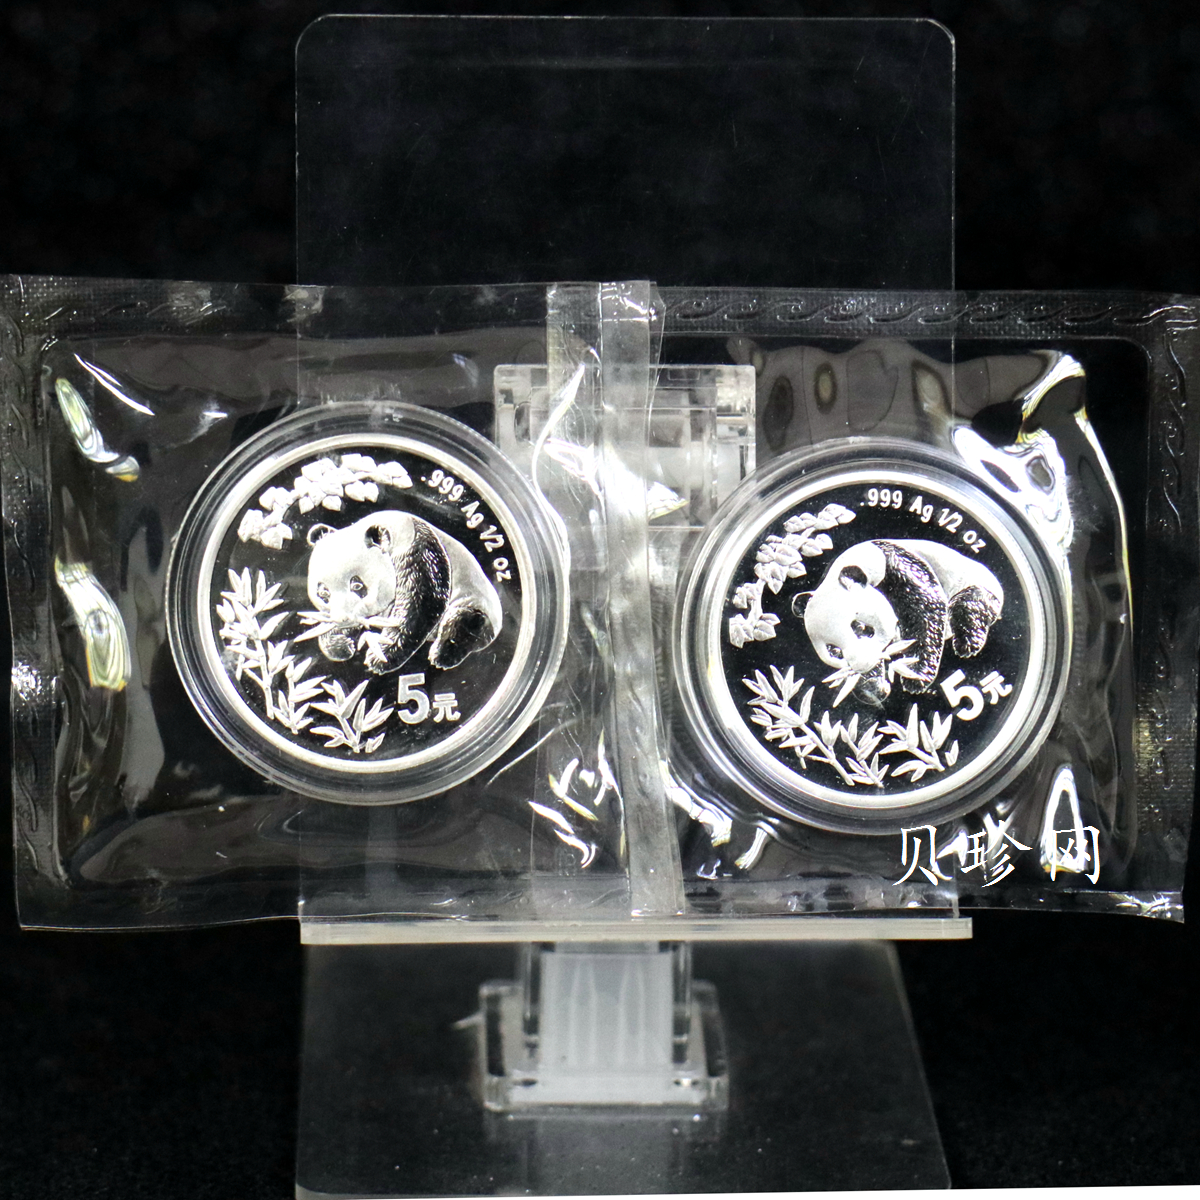 【989370】1998年熊猫.香港国际展销会1/2盎司银币 各一枚